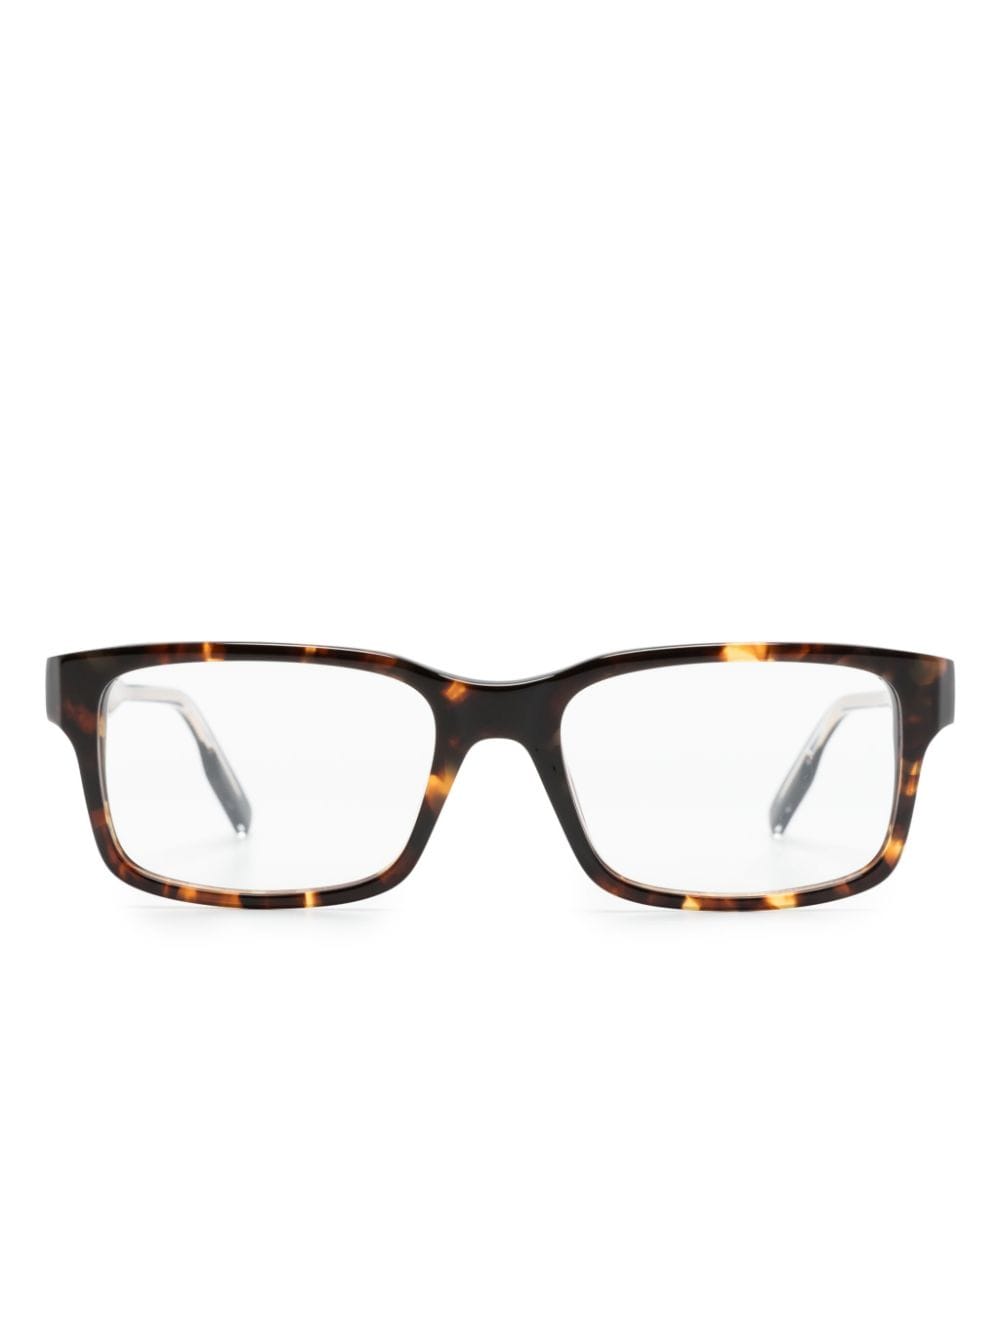 Zegna tortoiseshell-effect square-frame glasses - Brown von Zegna